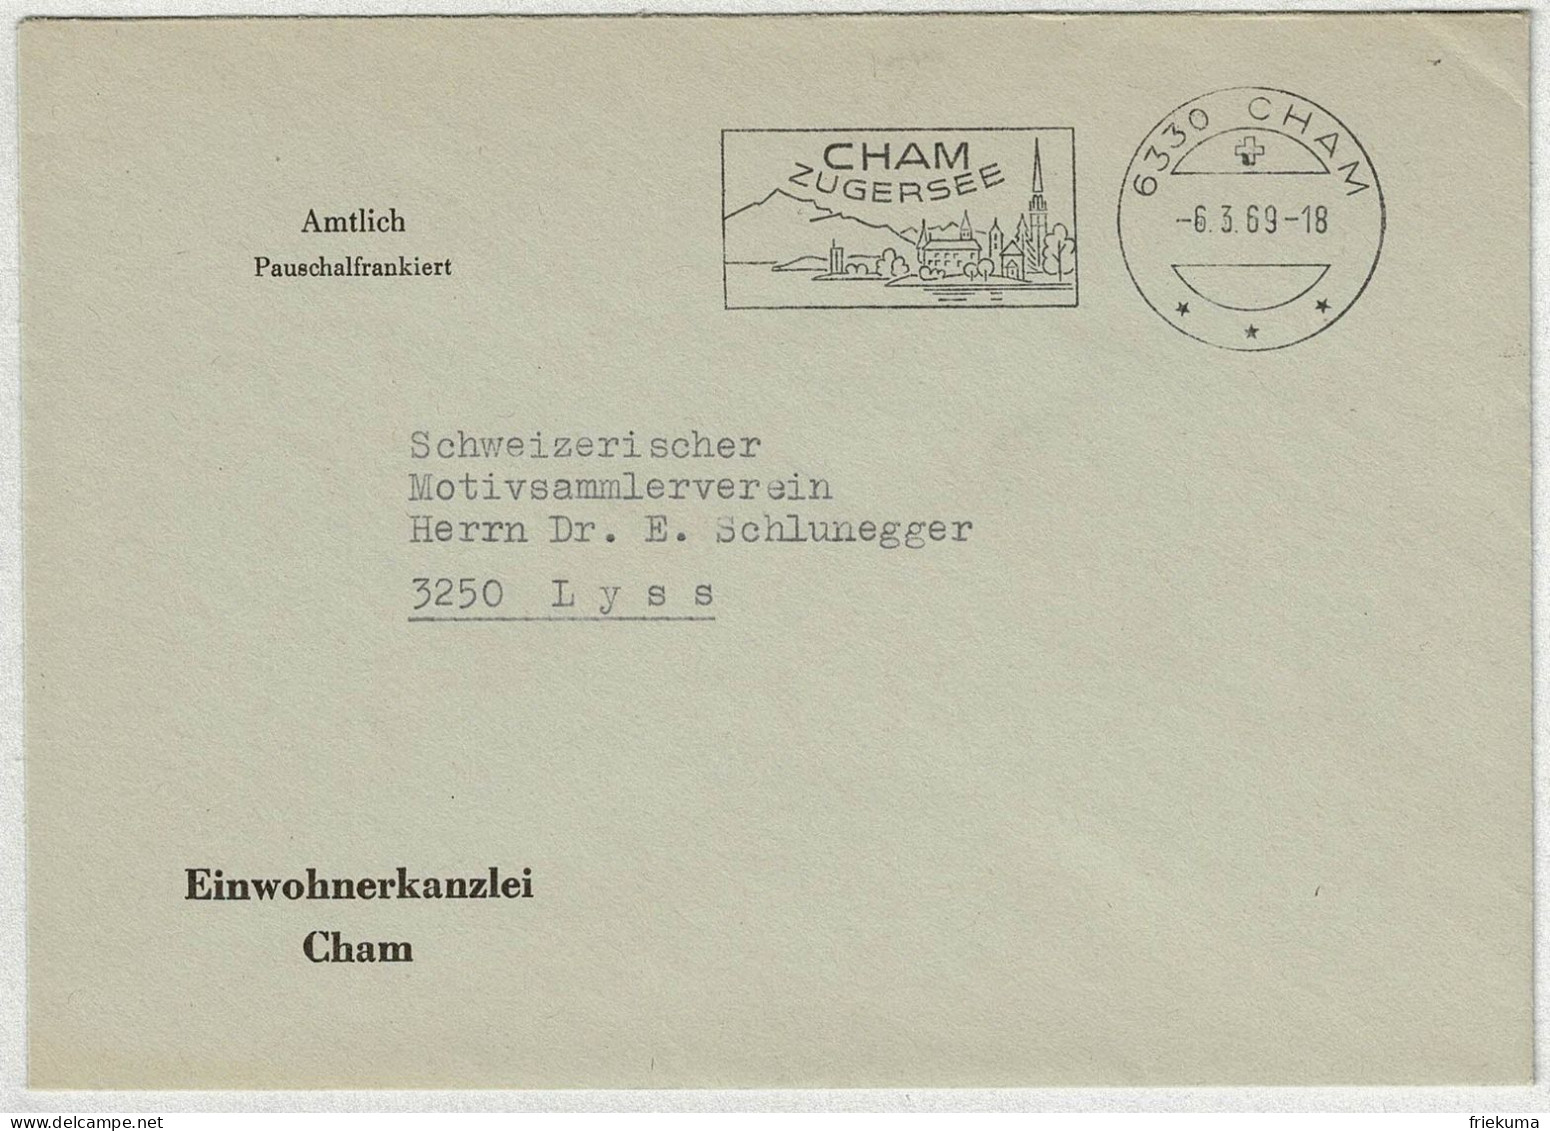 Schweiz 1969, Brief Amtlich Pauschalfrankiert Cham - Lyss - Postmark Collection